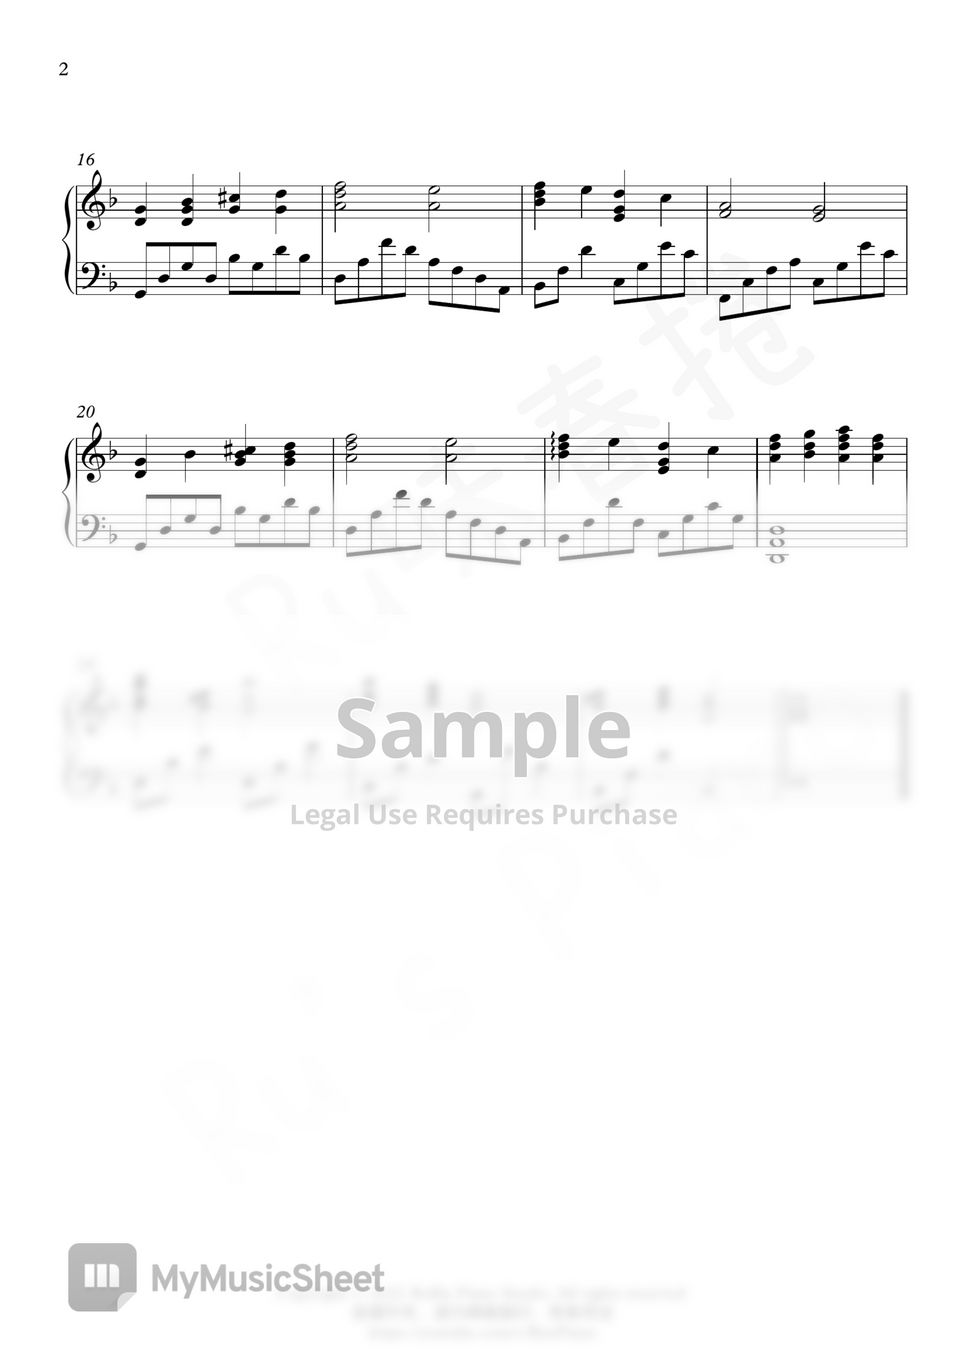 高梨康治 - NARUTO Sad Theme「Loneliness」 (Obito Theme) by Ru's Piano